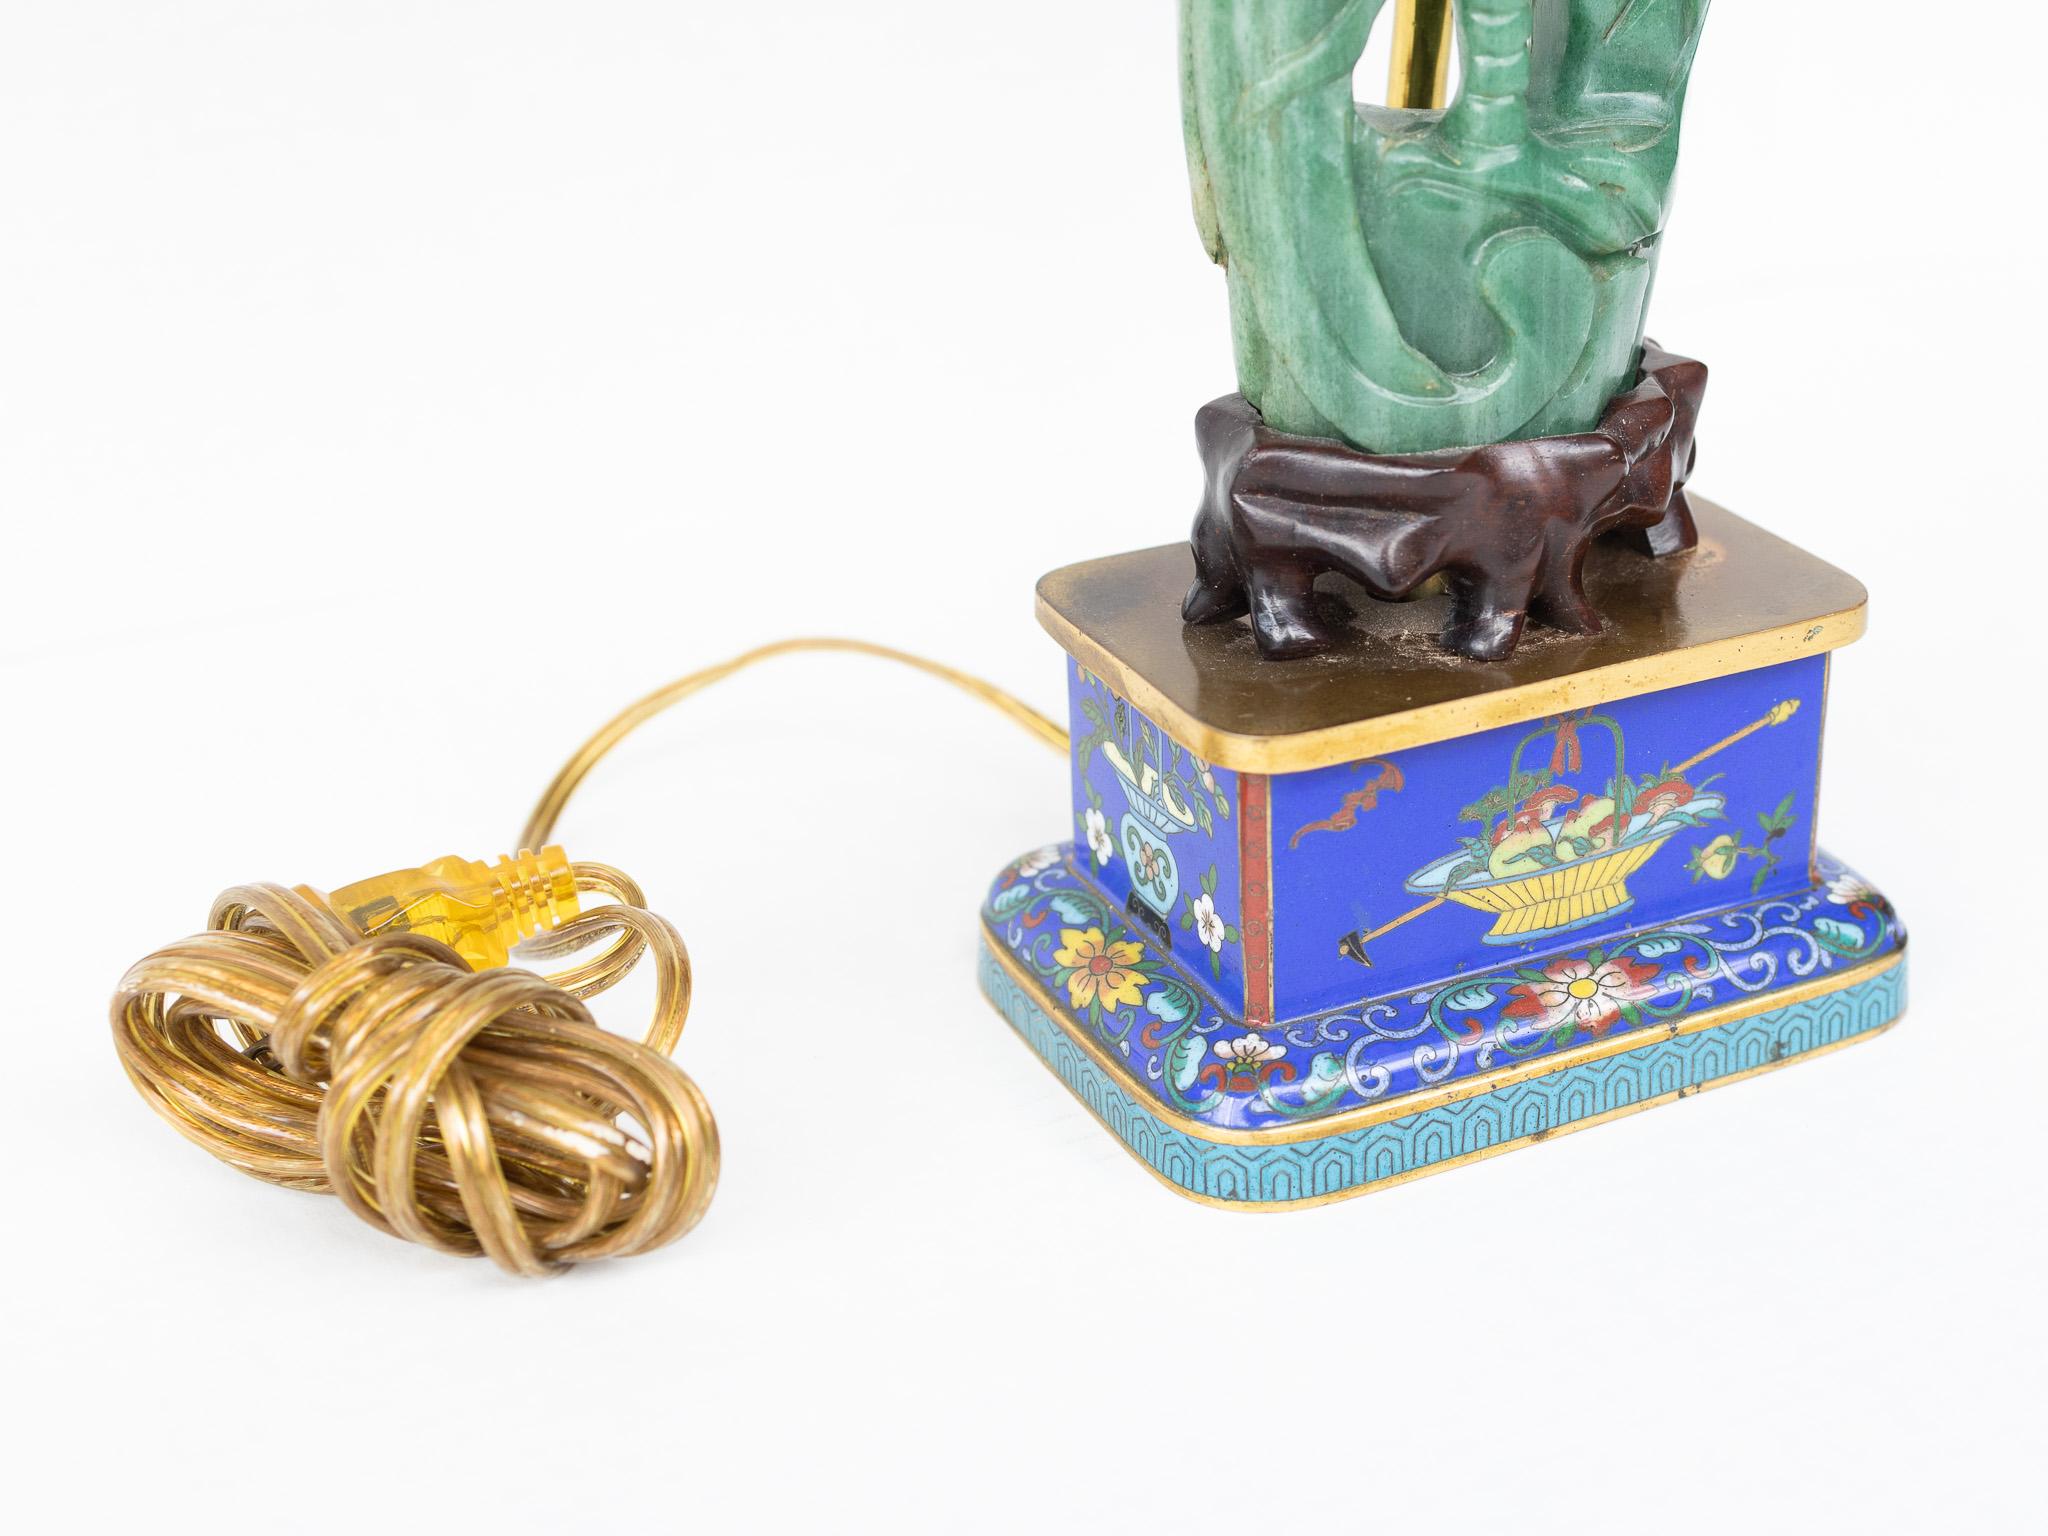 Cette magnifique et raffinée paire de lampes asiatiques est ornée de sculptures en pierre d'aventurine. La base bleue de la lampe, réalisée en cloisonné, présente des motifs floraux. Les abat-jour contiennent des images en soie de bâtiments et